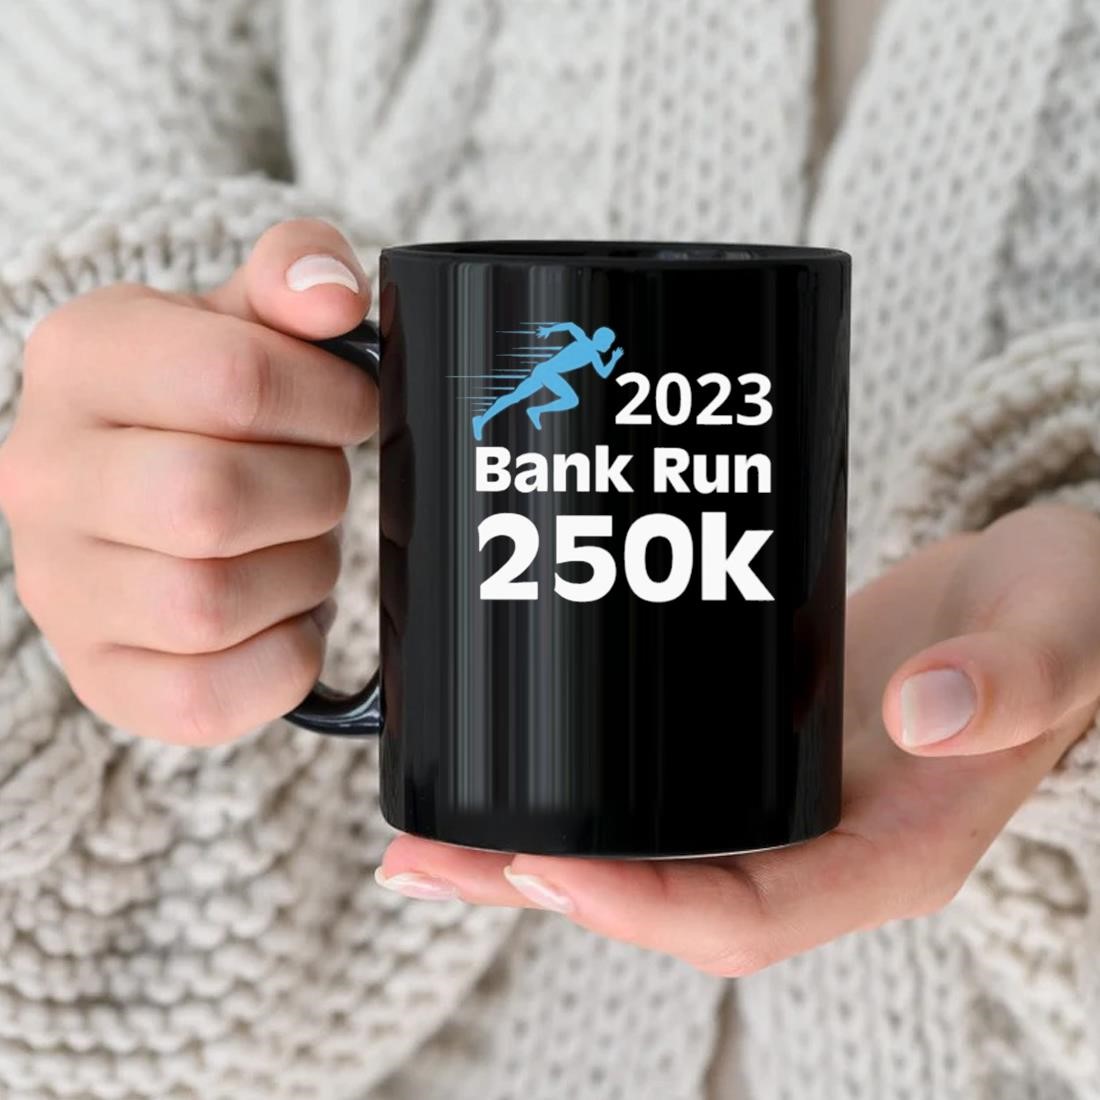 Svb 2023 Bank Run 250k Mug nhu.jpg